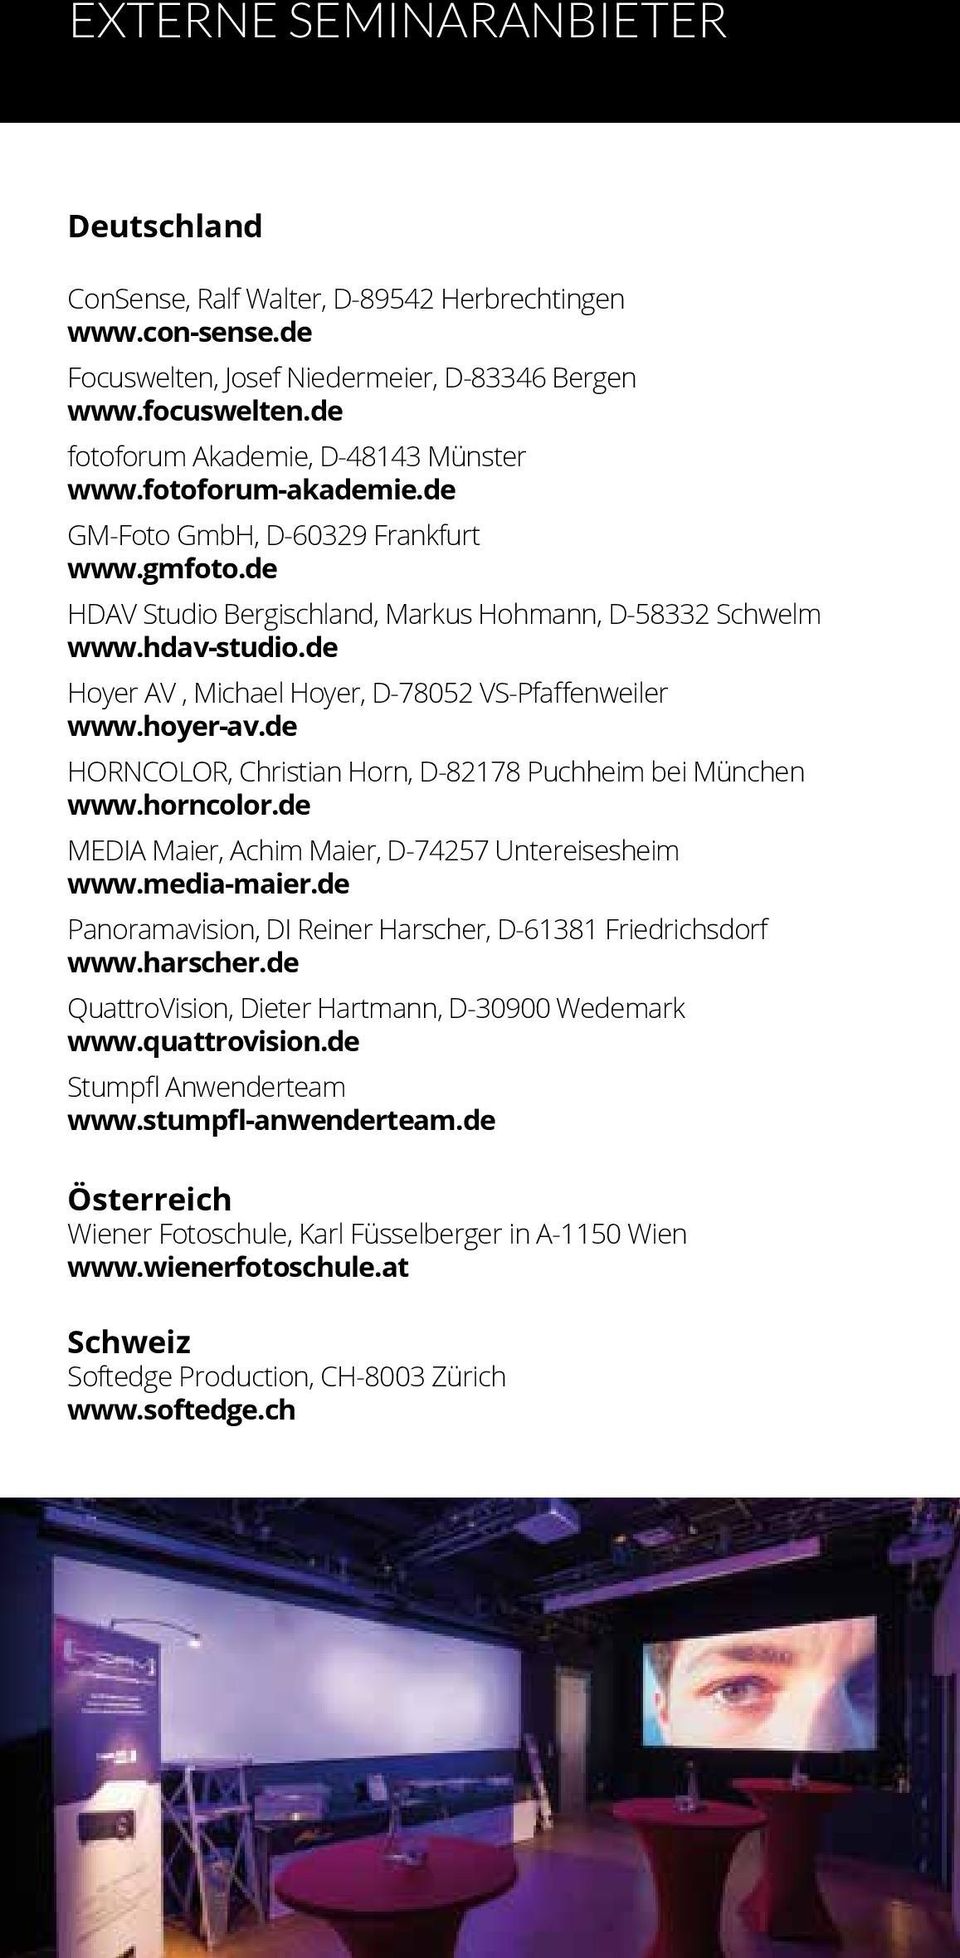 de Hoyer AV, Michael Hoyer, D-78052 VS-Pfaffenweiler www.hoyer-av.de HORNCOLOR, Christian Horn, D-82178 Puchheim bei München www.horncolor.de MEDIA Maier, Achim Maier, D-74257 Untereisesheim www.